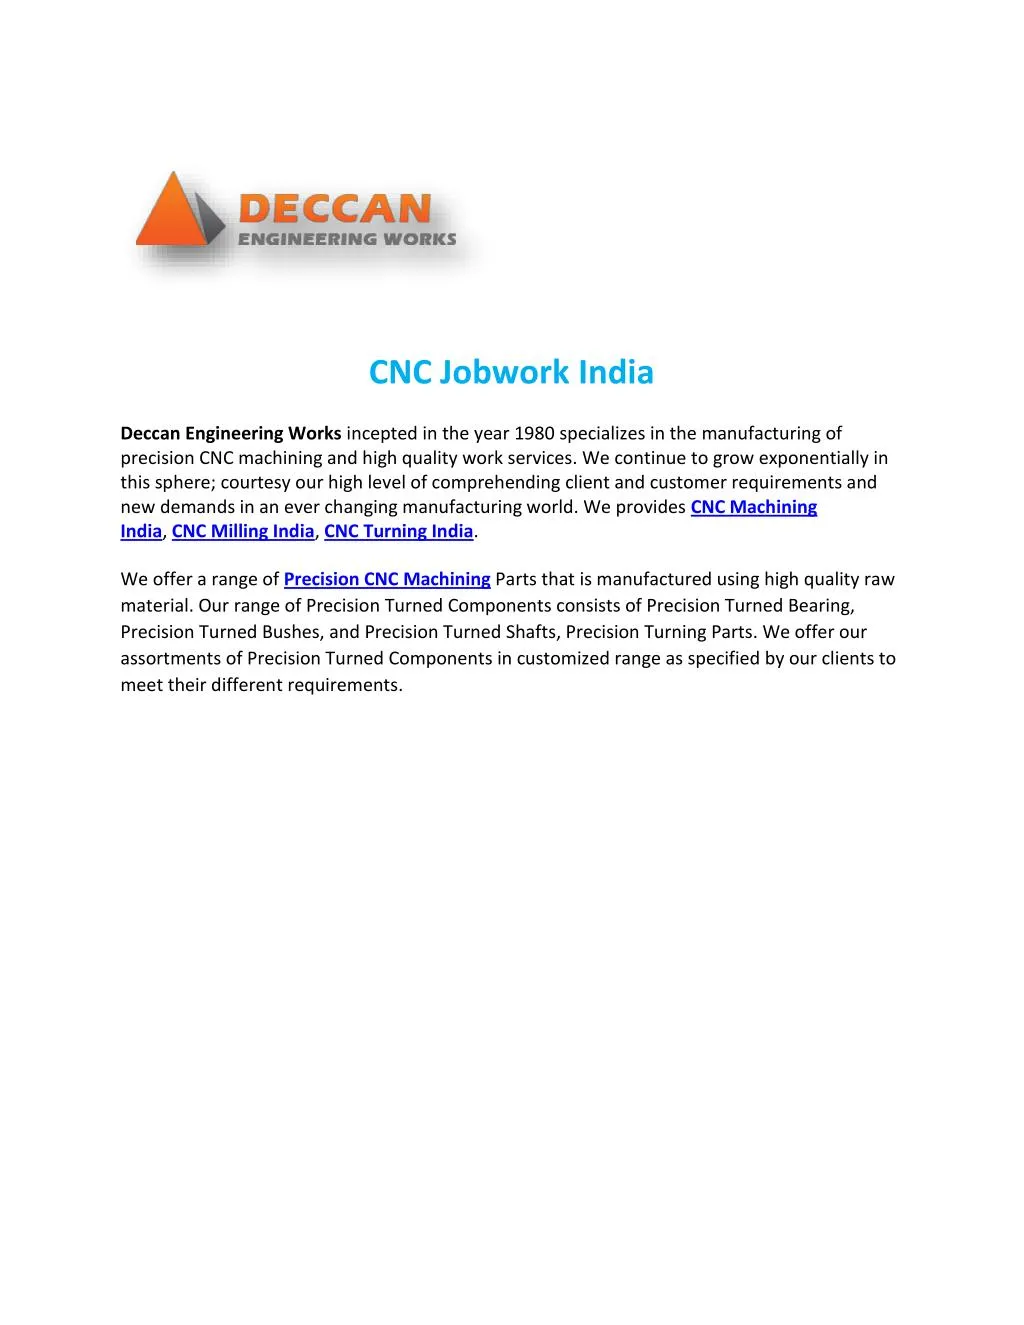 cnc jobwork india